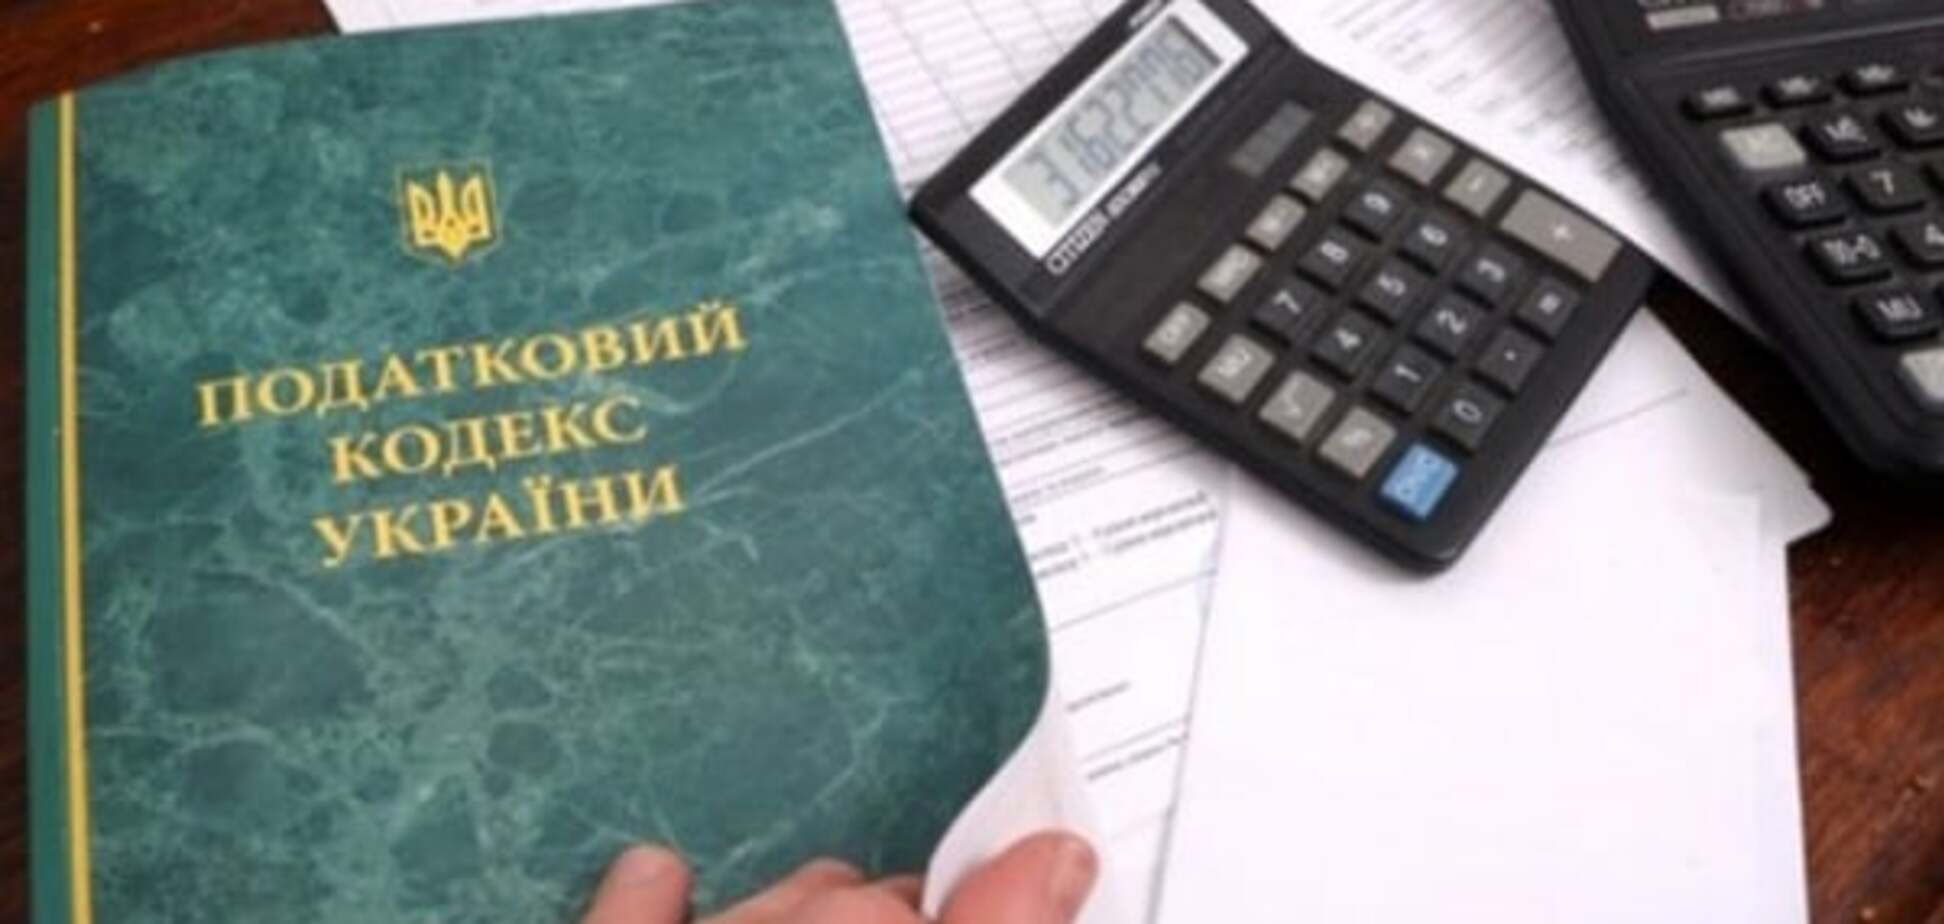 Налоговый кодекс Украины